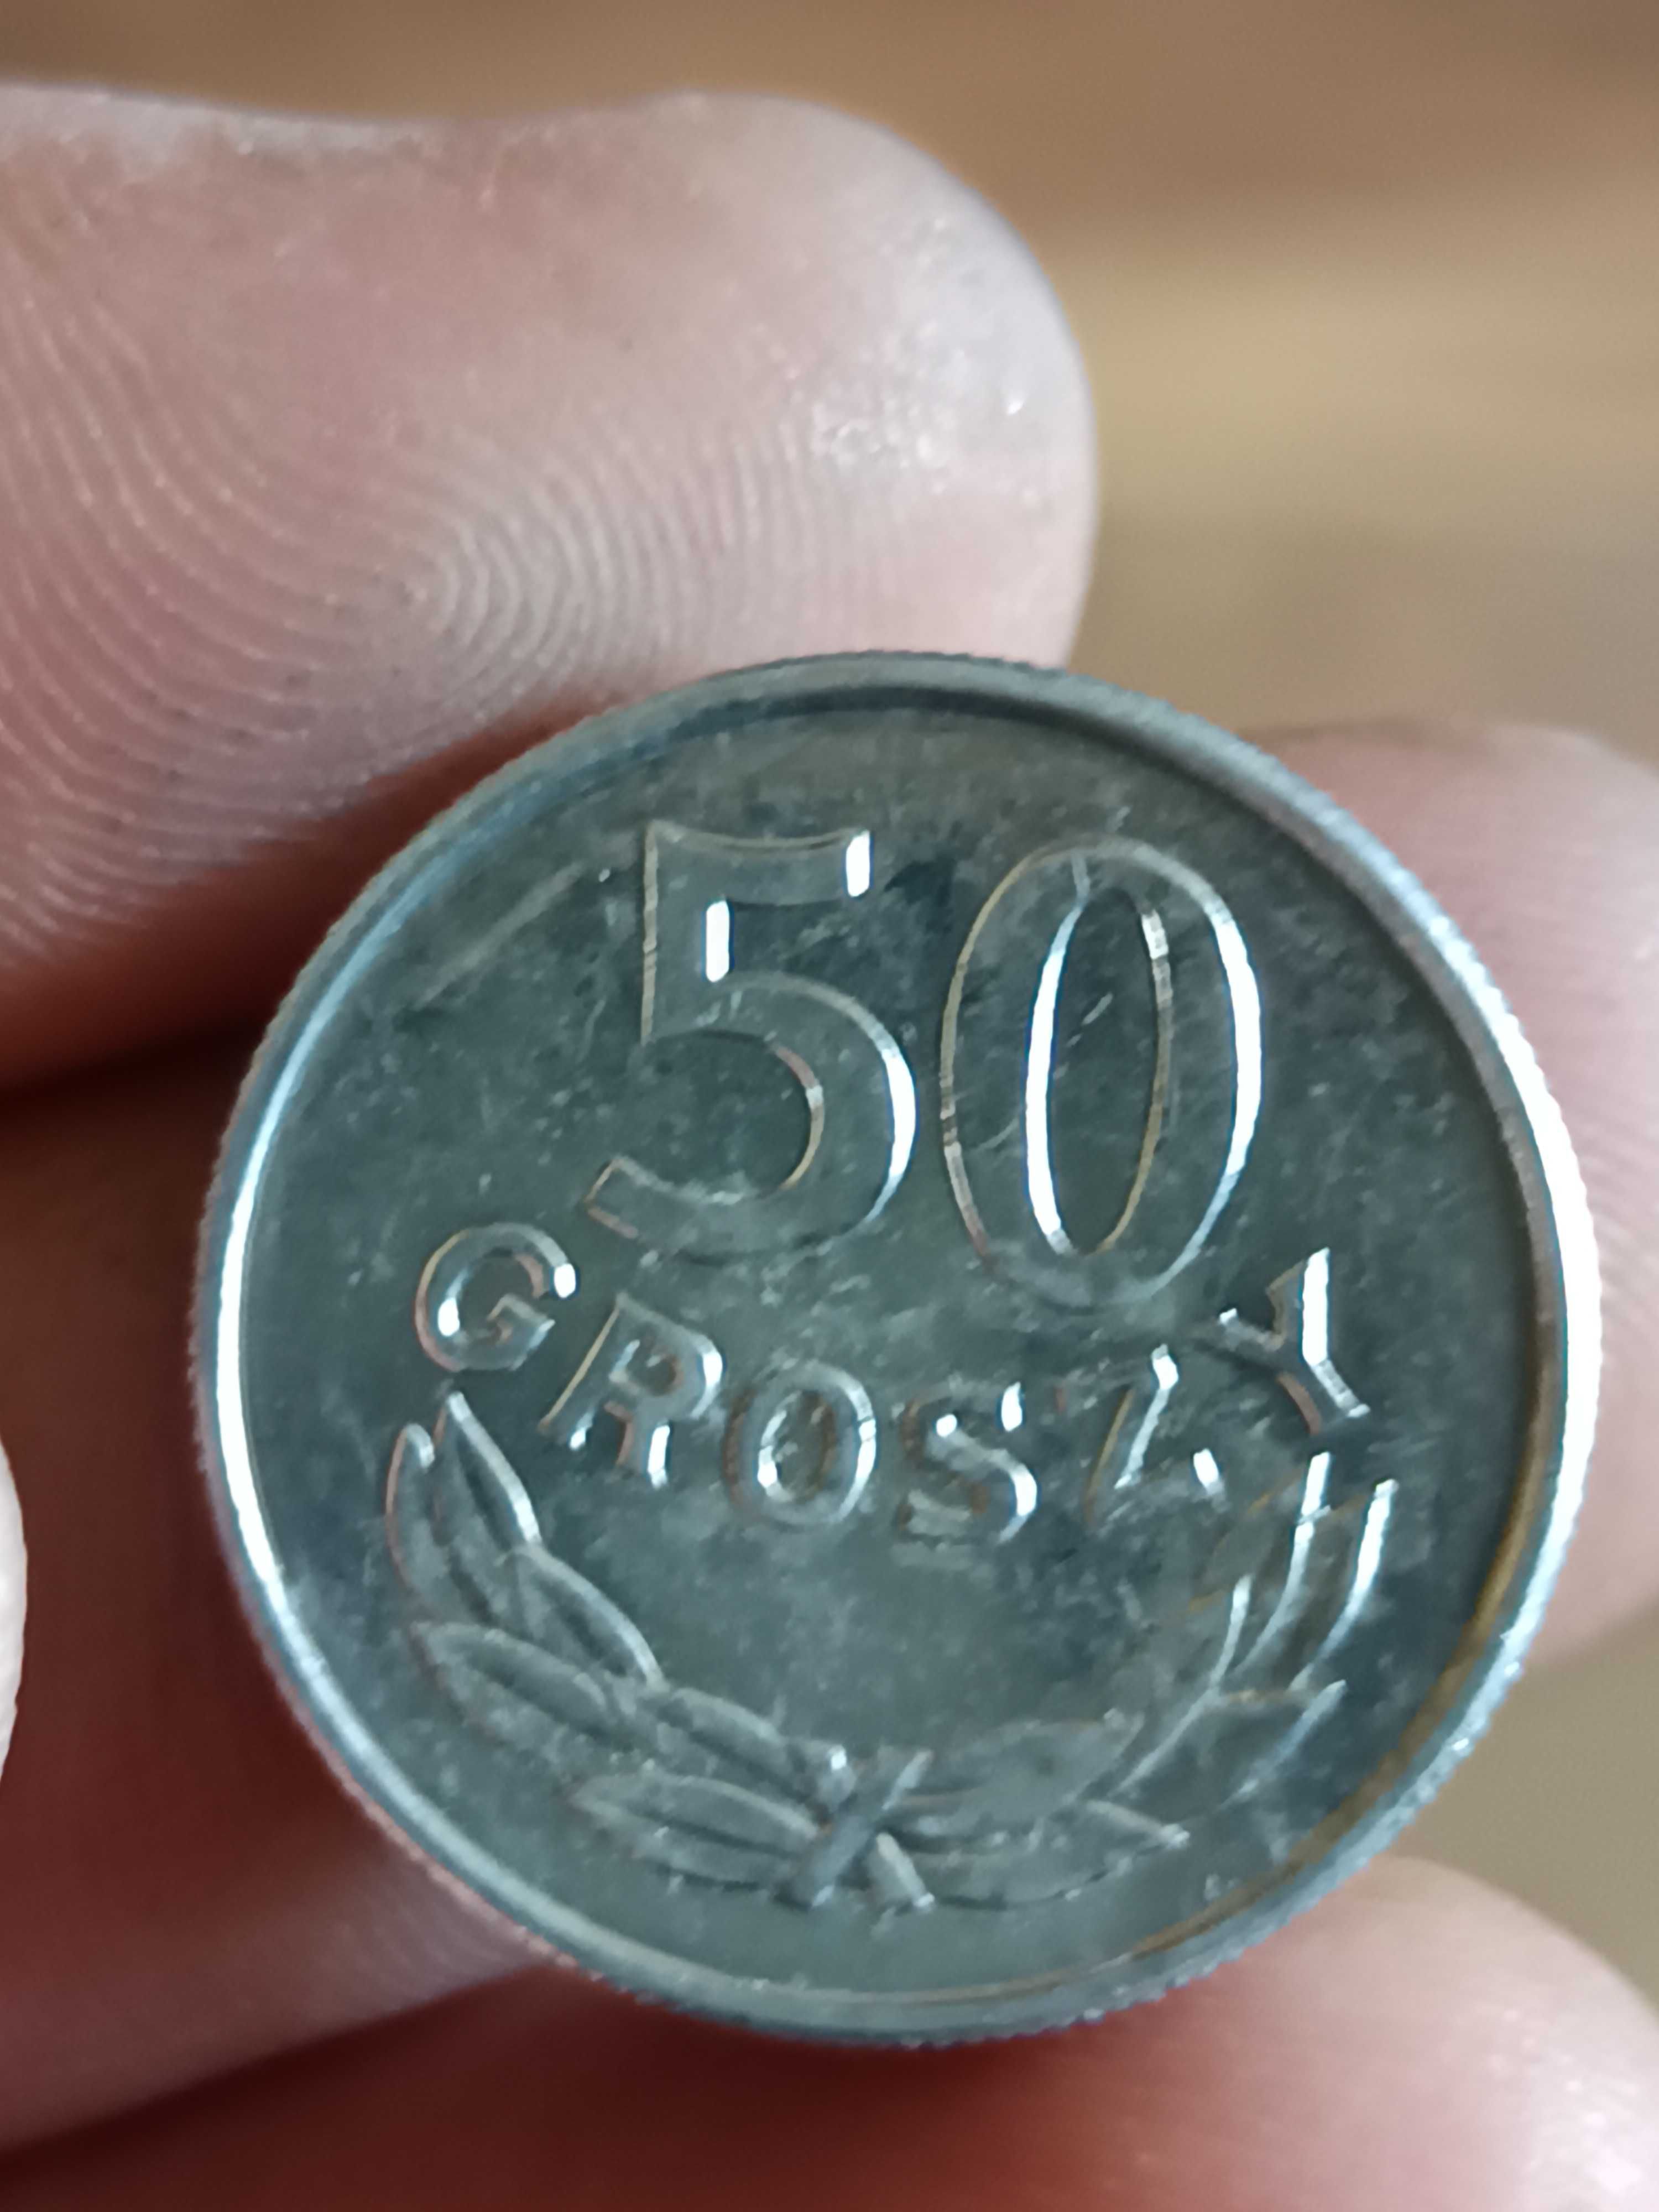 Sprzedam monete 50 gr 1986 rok